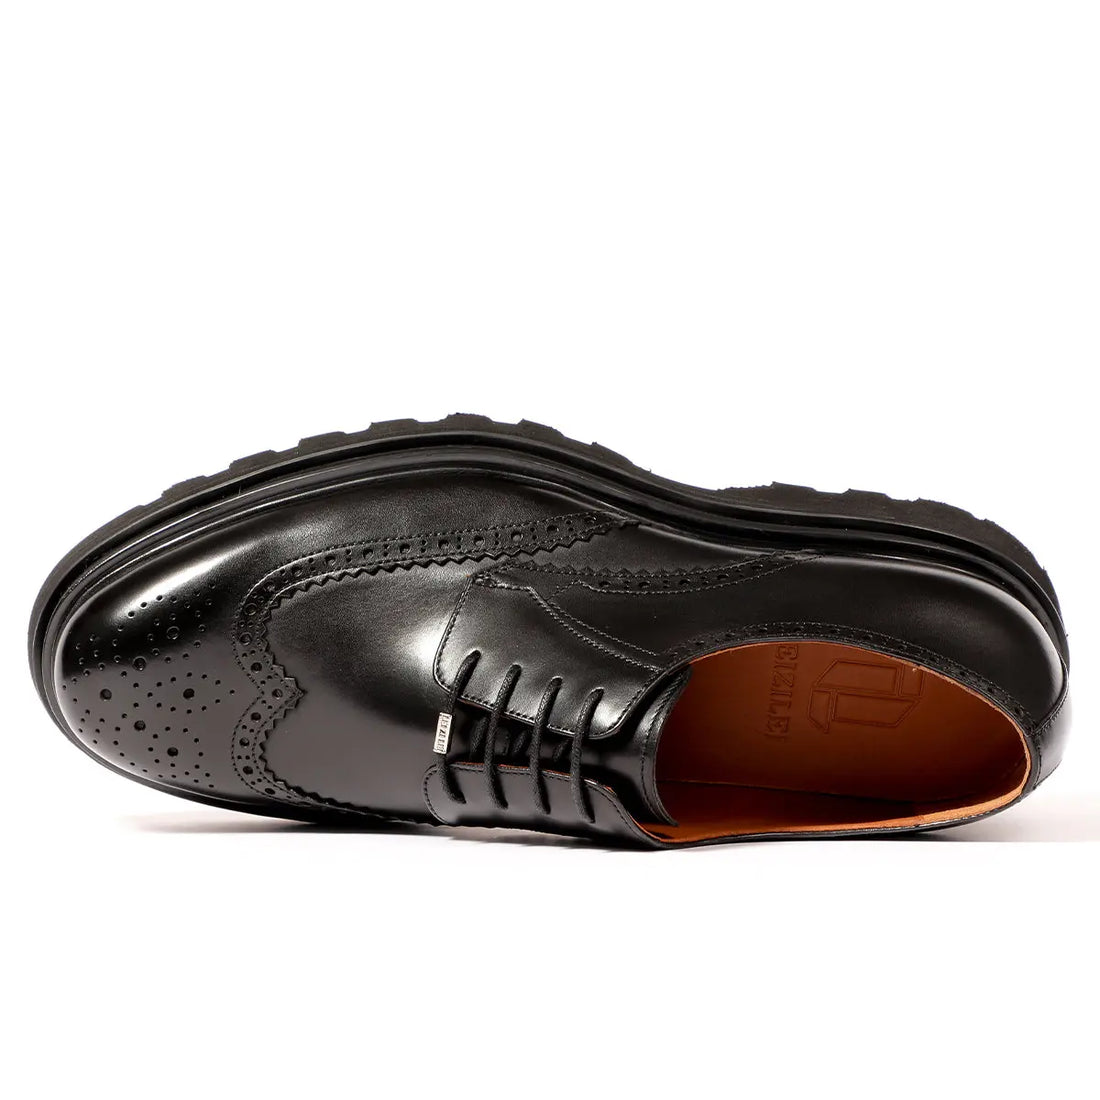 Men's black lace-up platform brogue derby shoes 90109 Leizilei